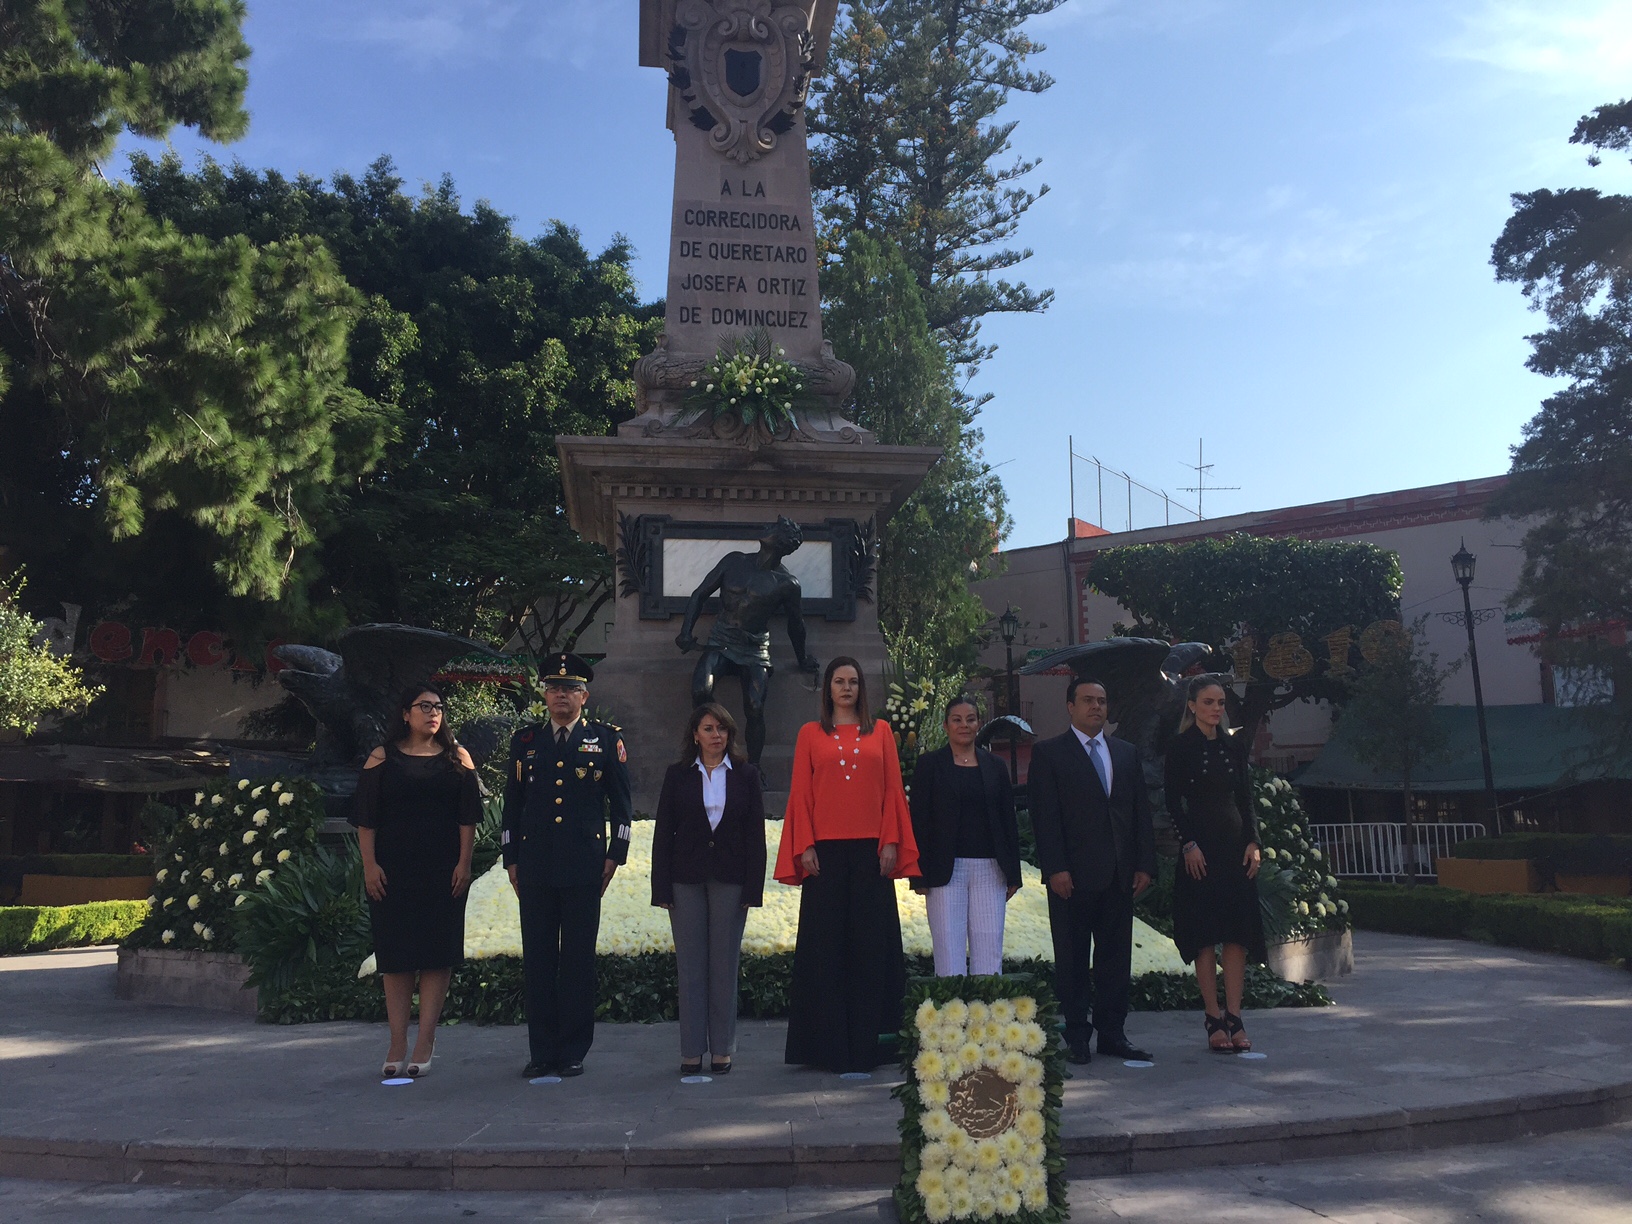  Presidenta del DIF encabeza guardia de honor a “La Corregidora”